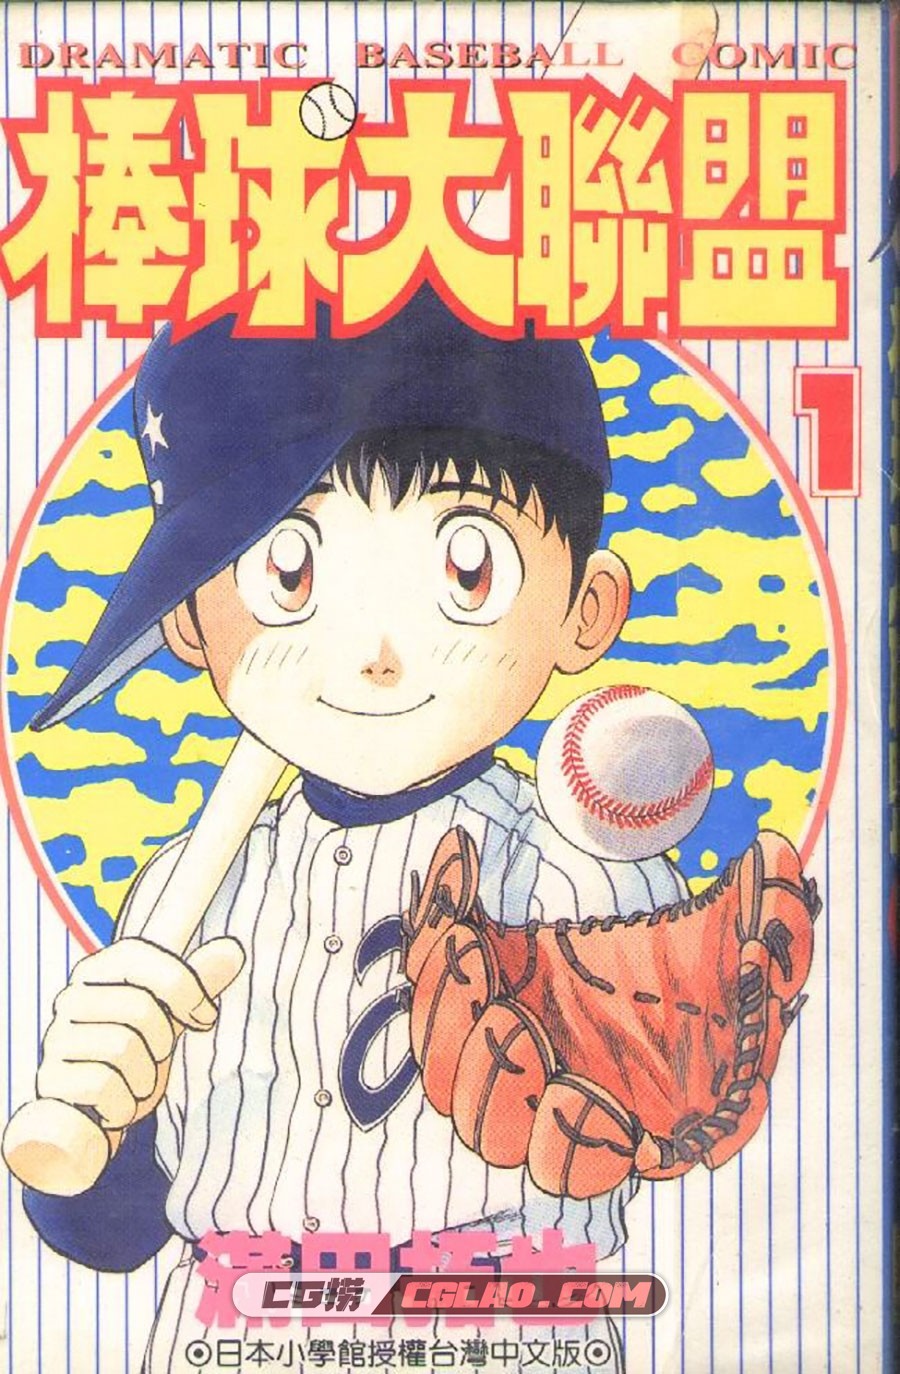 棒球大联盟 满田拓也 1-78卷 漫画全集下载 百度网盘下载,0001.jpg